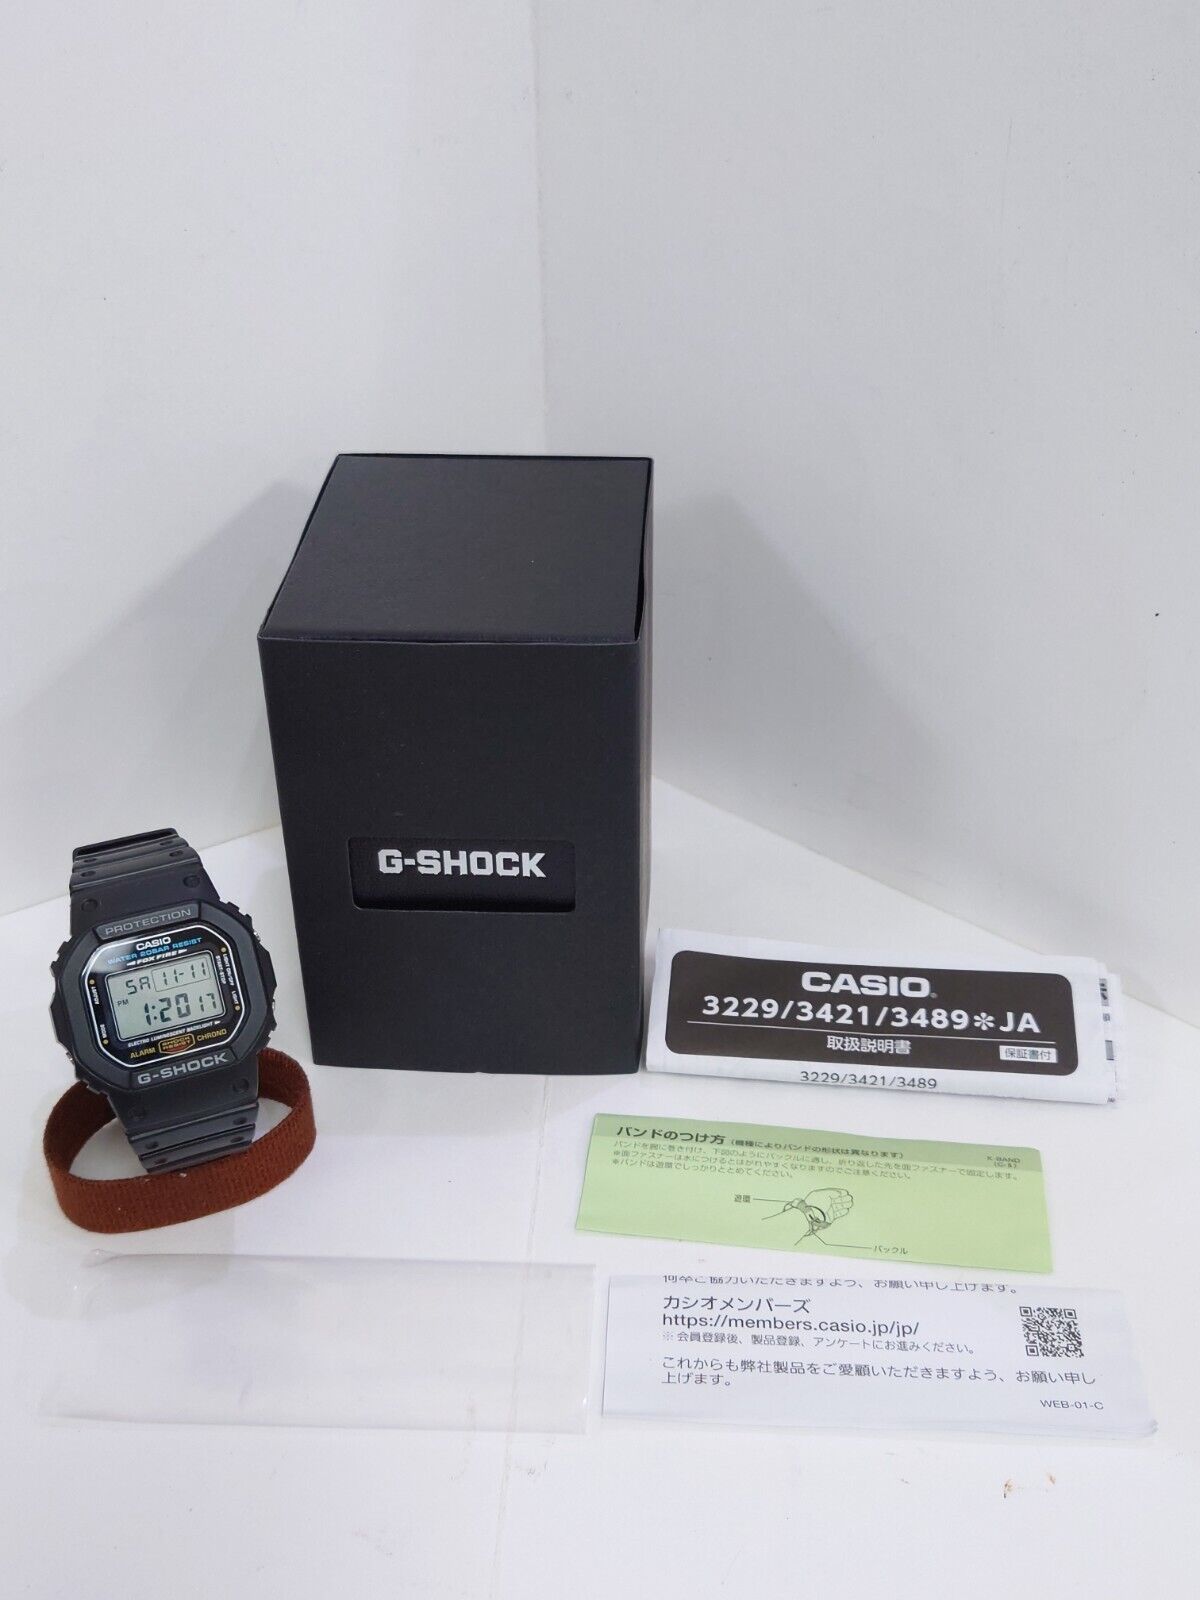 CASIO G-SHOCK DW-5600E 3229 Watch Men's Digital Black from Japan